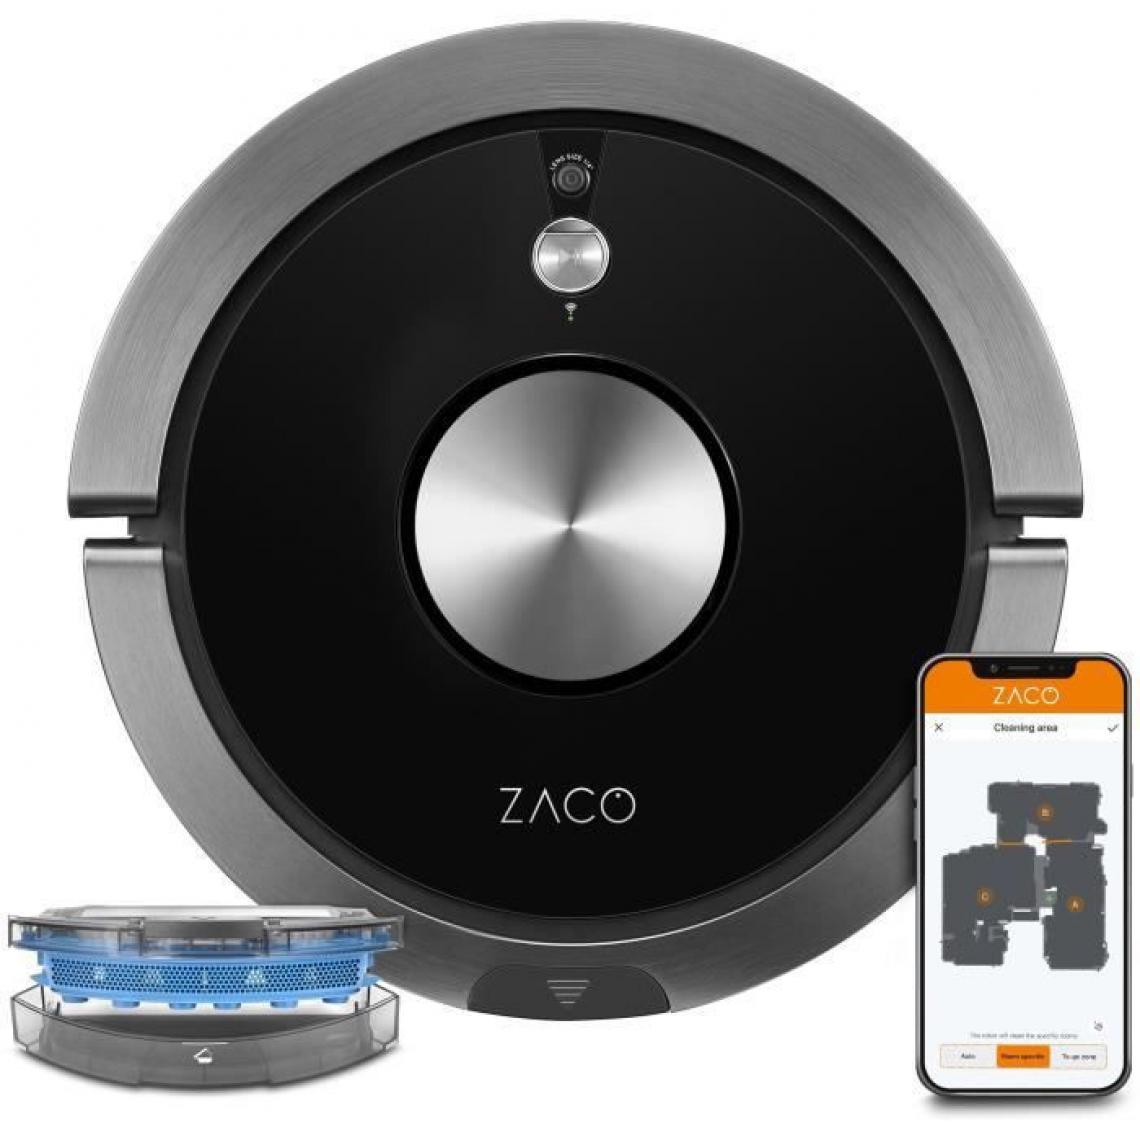 ZACO - ZACO A9SPRO 501905 - Robot aspirateur laveur connecté - Jusqu'a 110 minutes - 68 dB - Fonction auto-résumé - Aspirateur robot